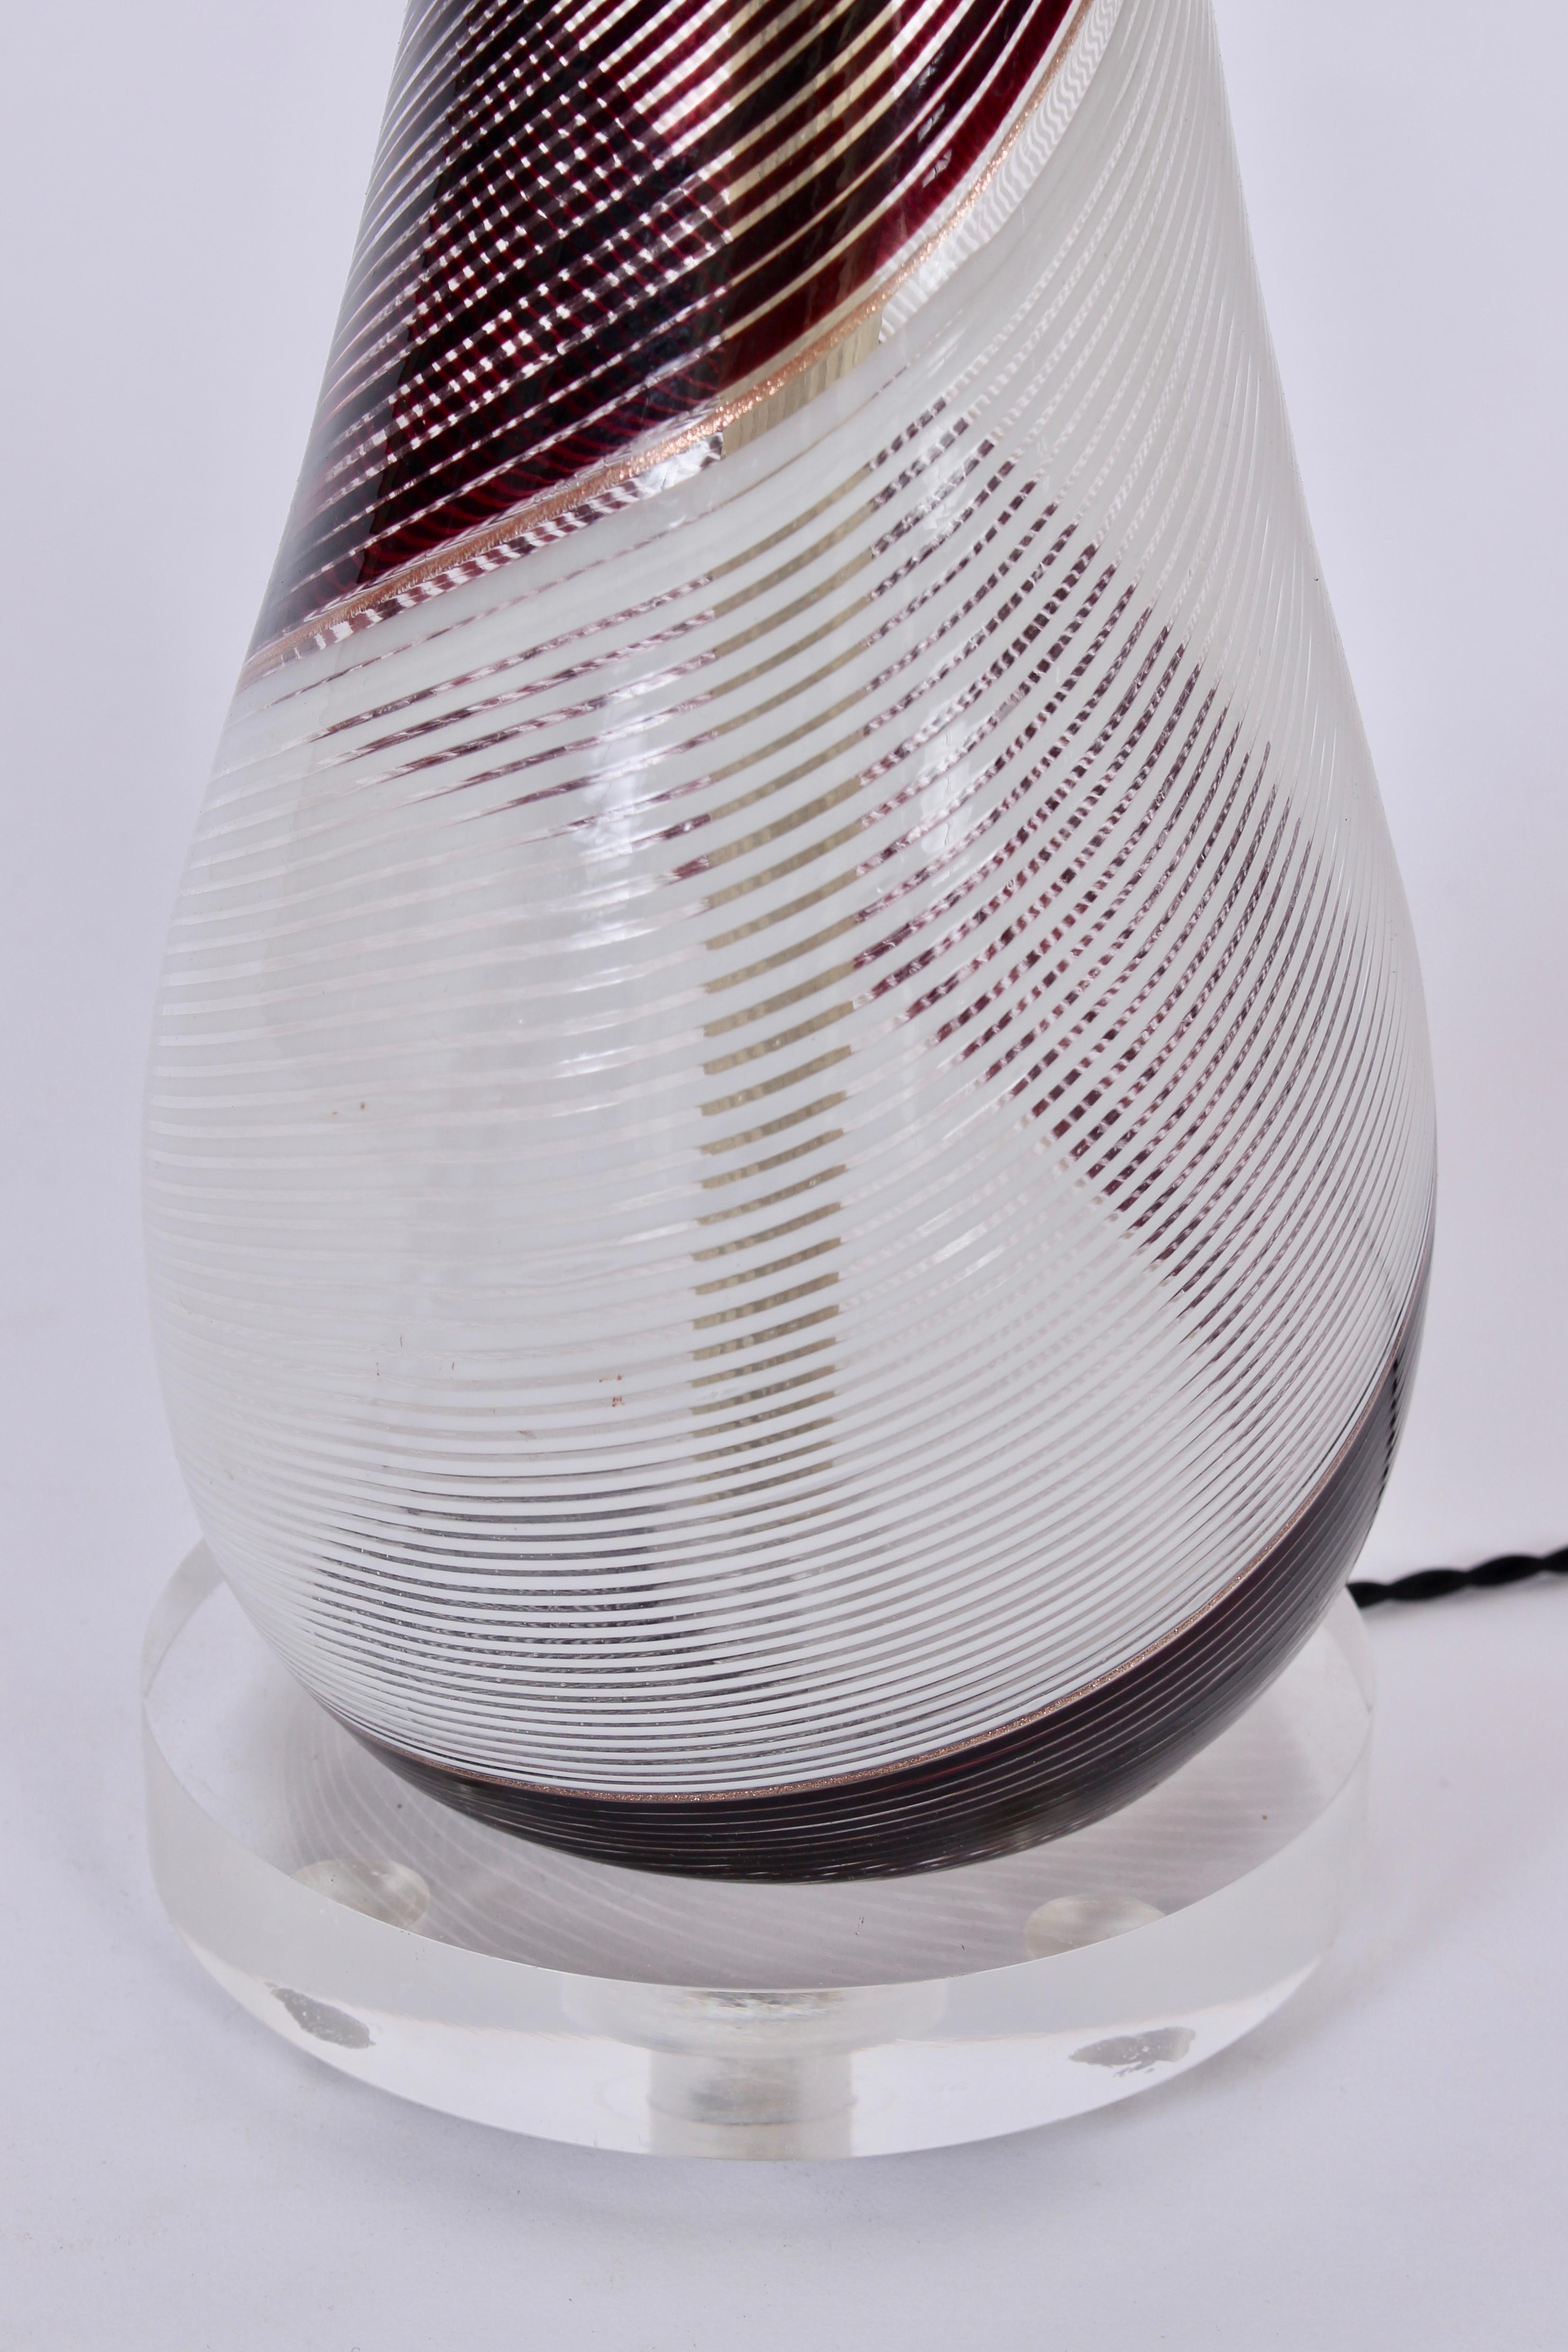 Dino Martens Mezza Filigrana Murano Glass Table Lamp in Black, White & Copper  For Sale 1